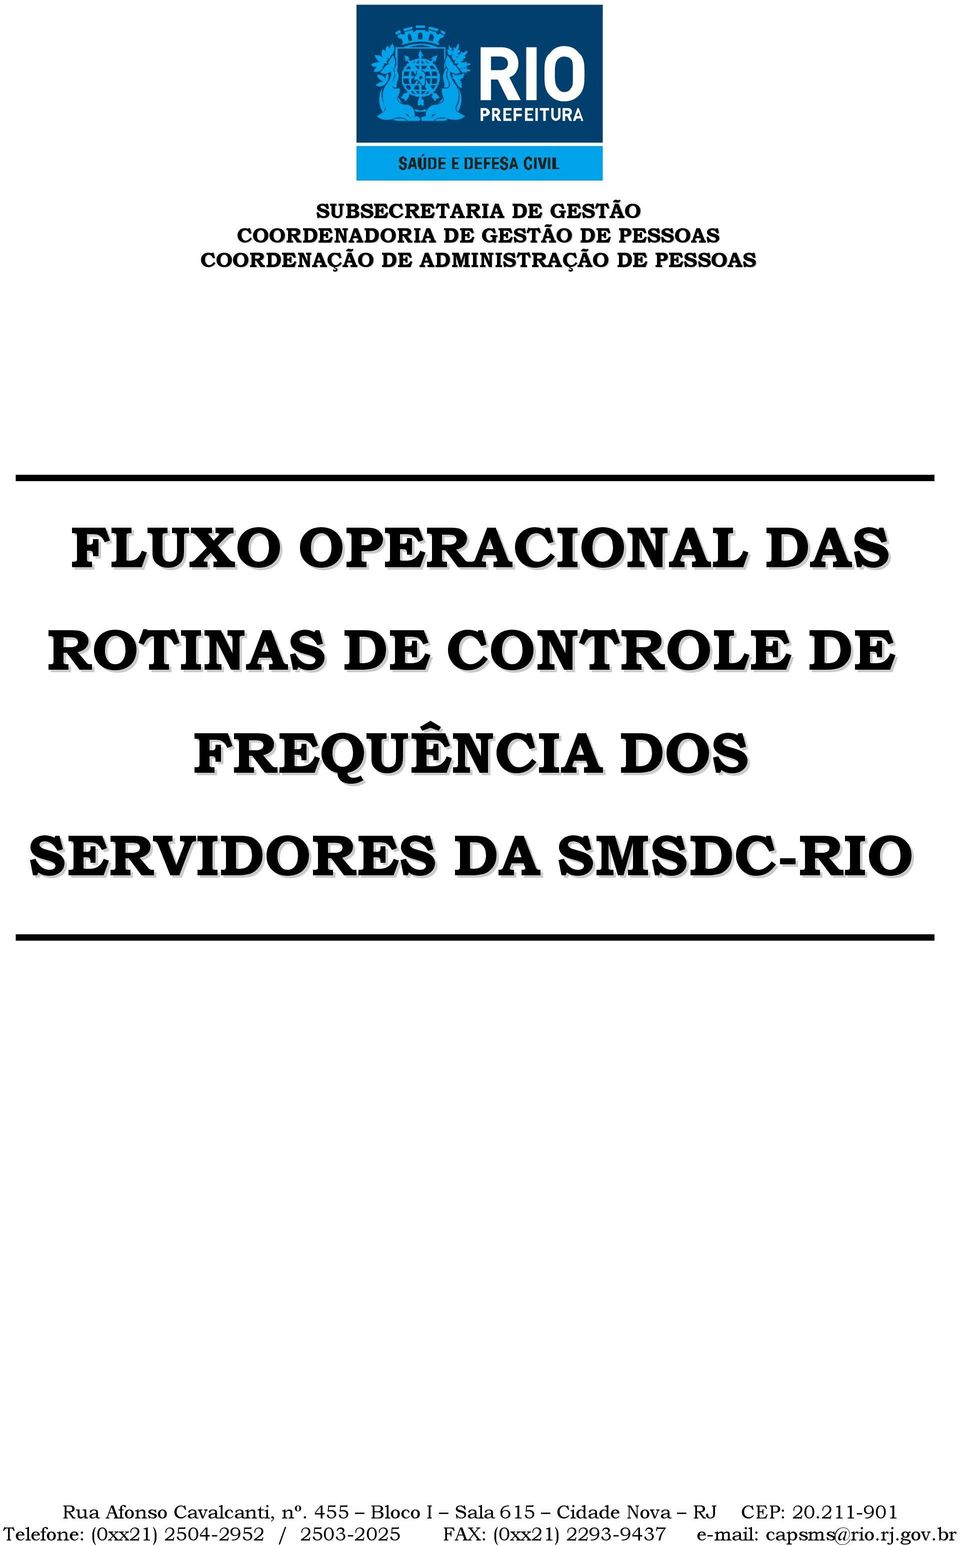 ADMINISTRAÇÃO DE PESSOAS FLUXO OPERACIONAL